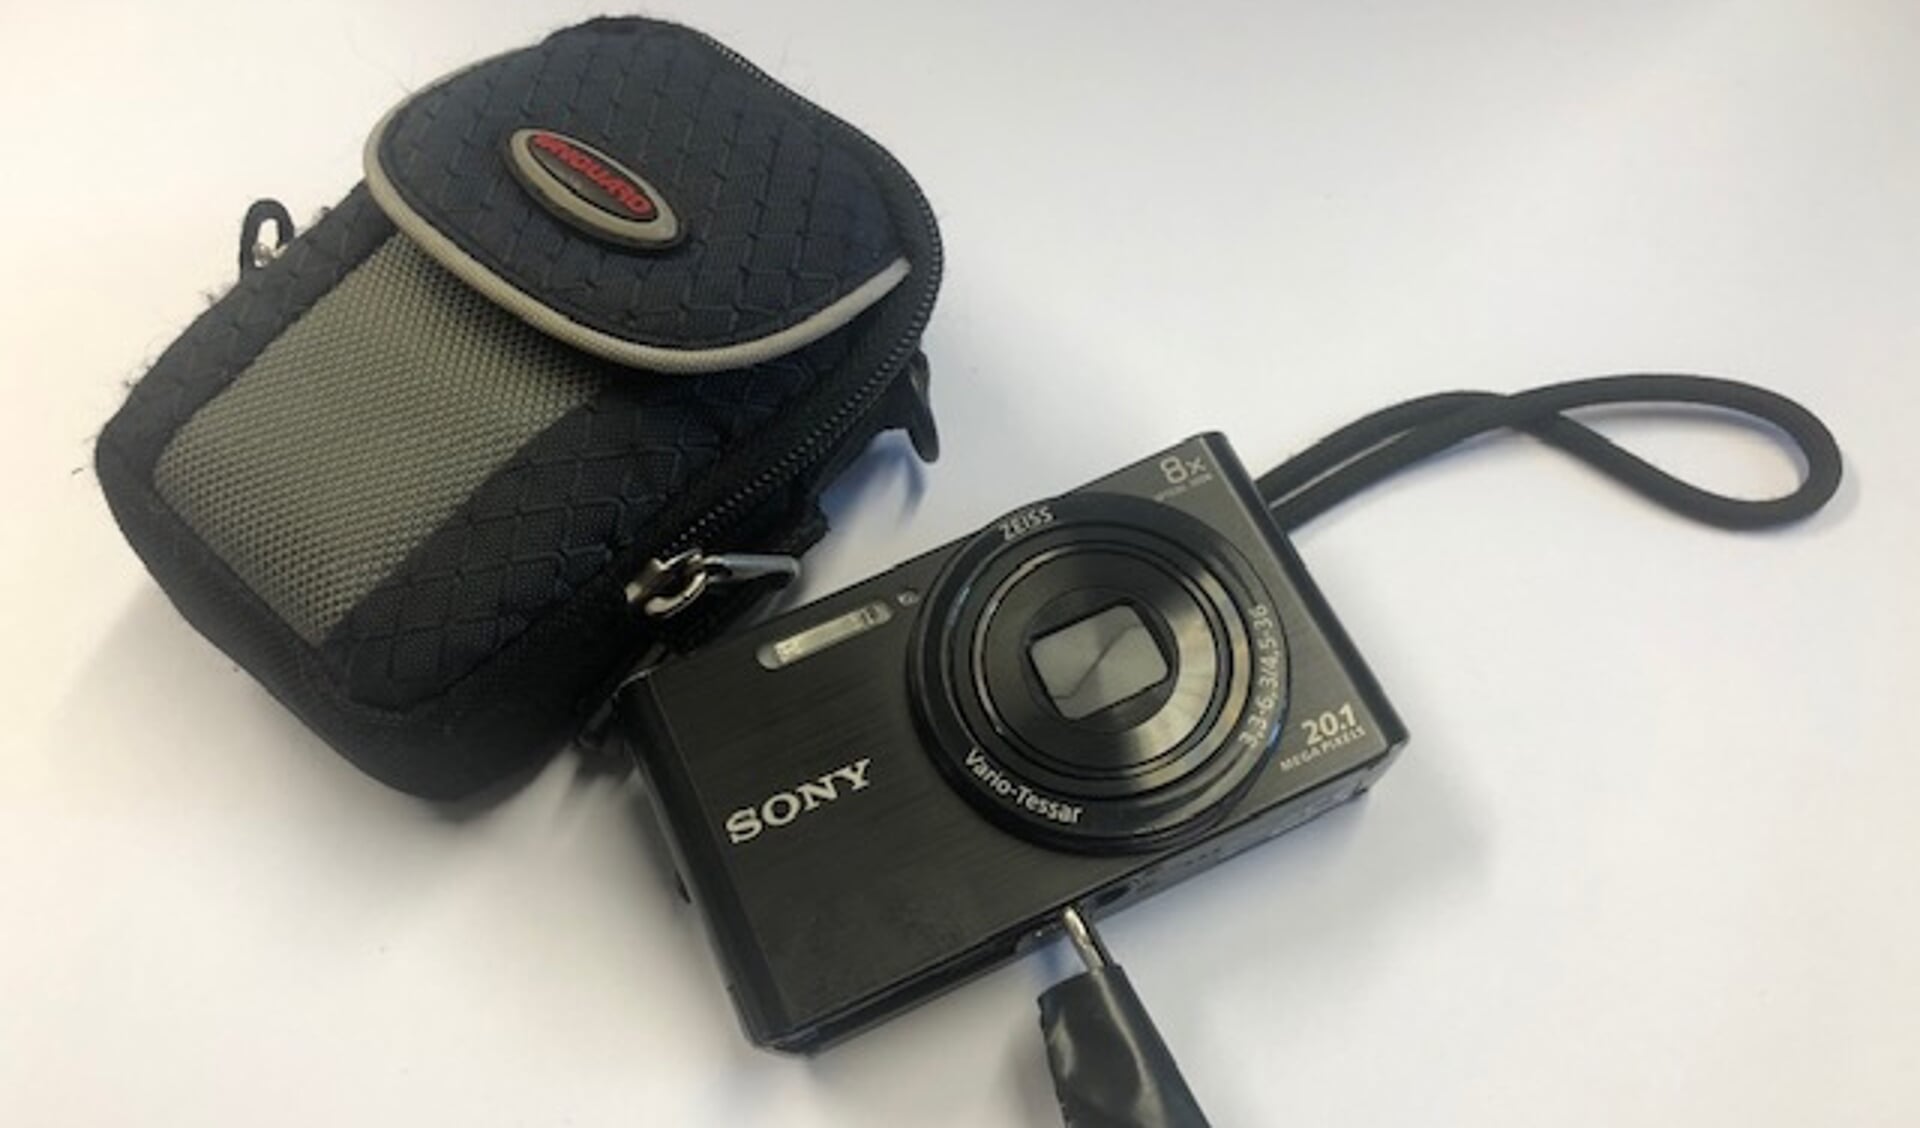 Sony Camera met beschermtasje van Vanguard